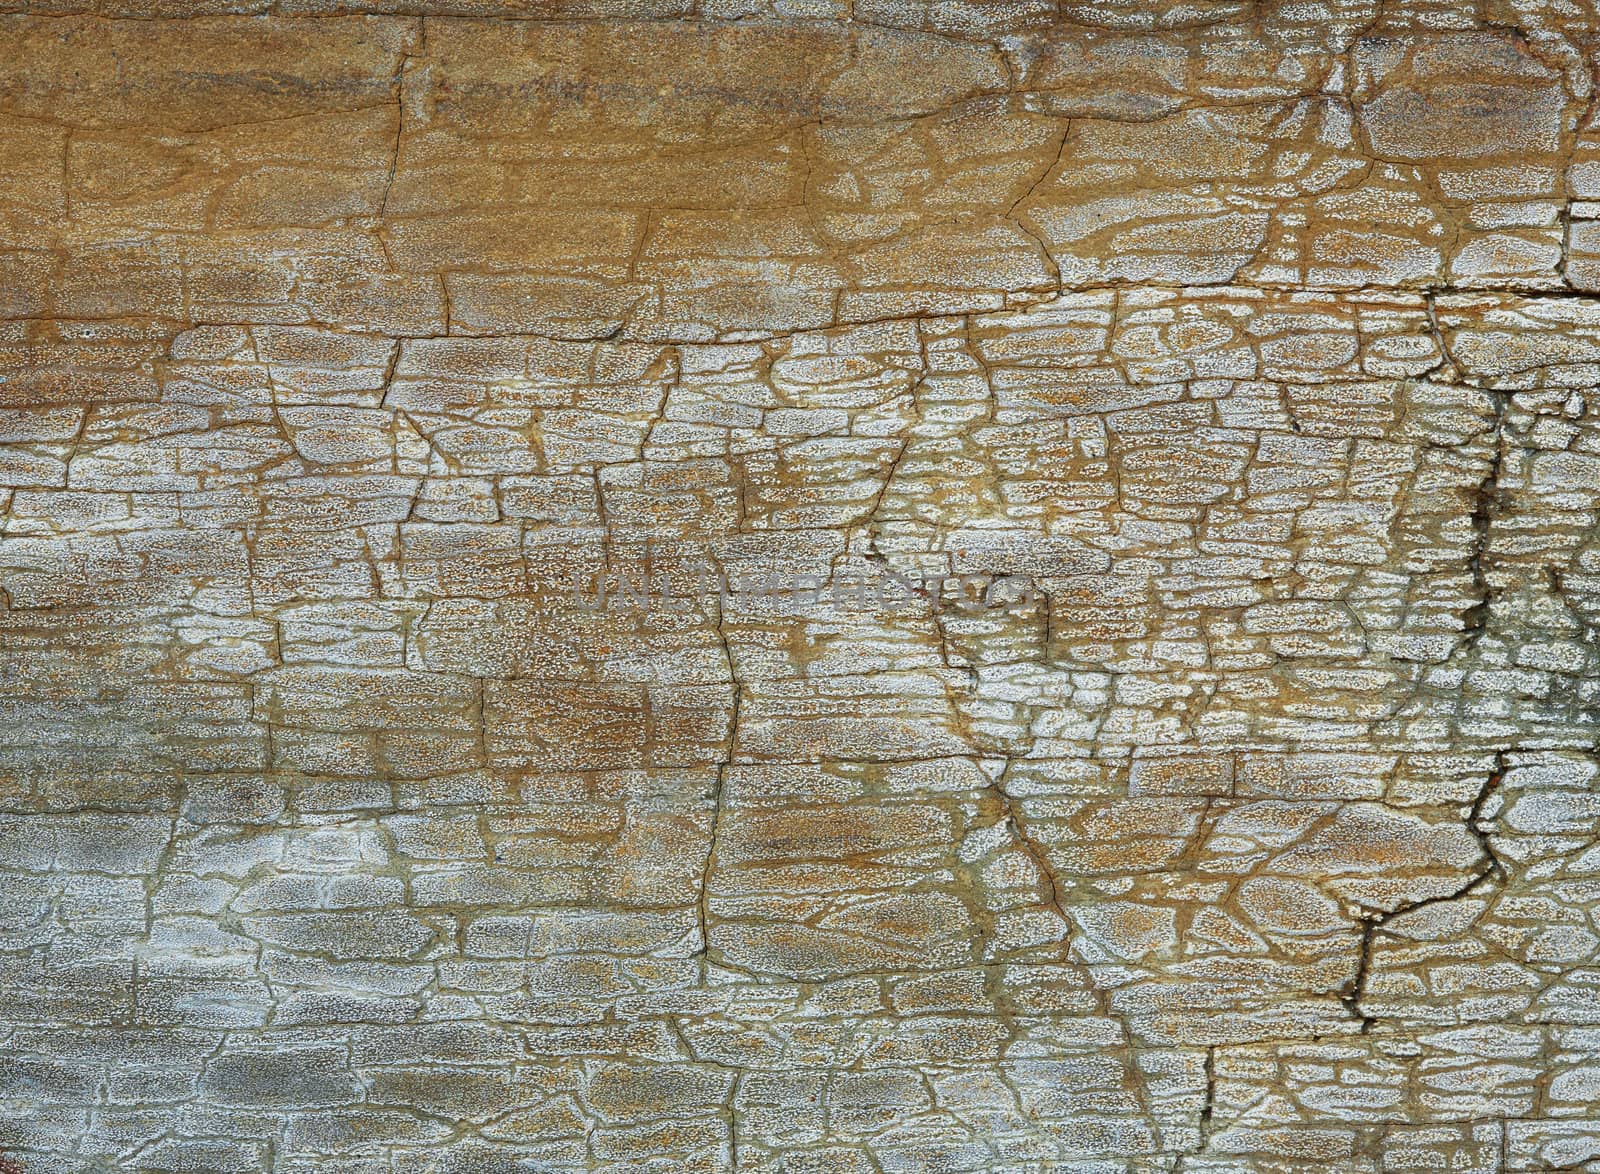 Closeup picture of a Carpathian sandstone texture.